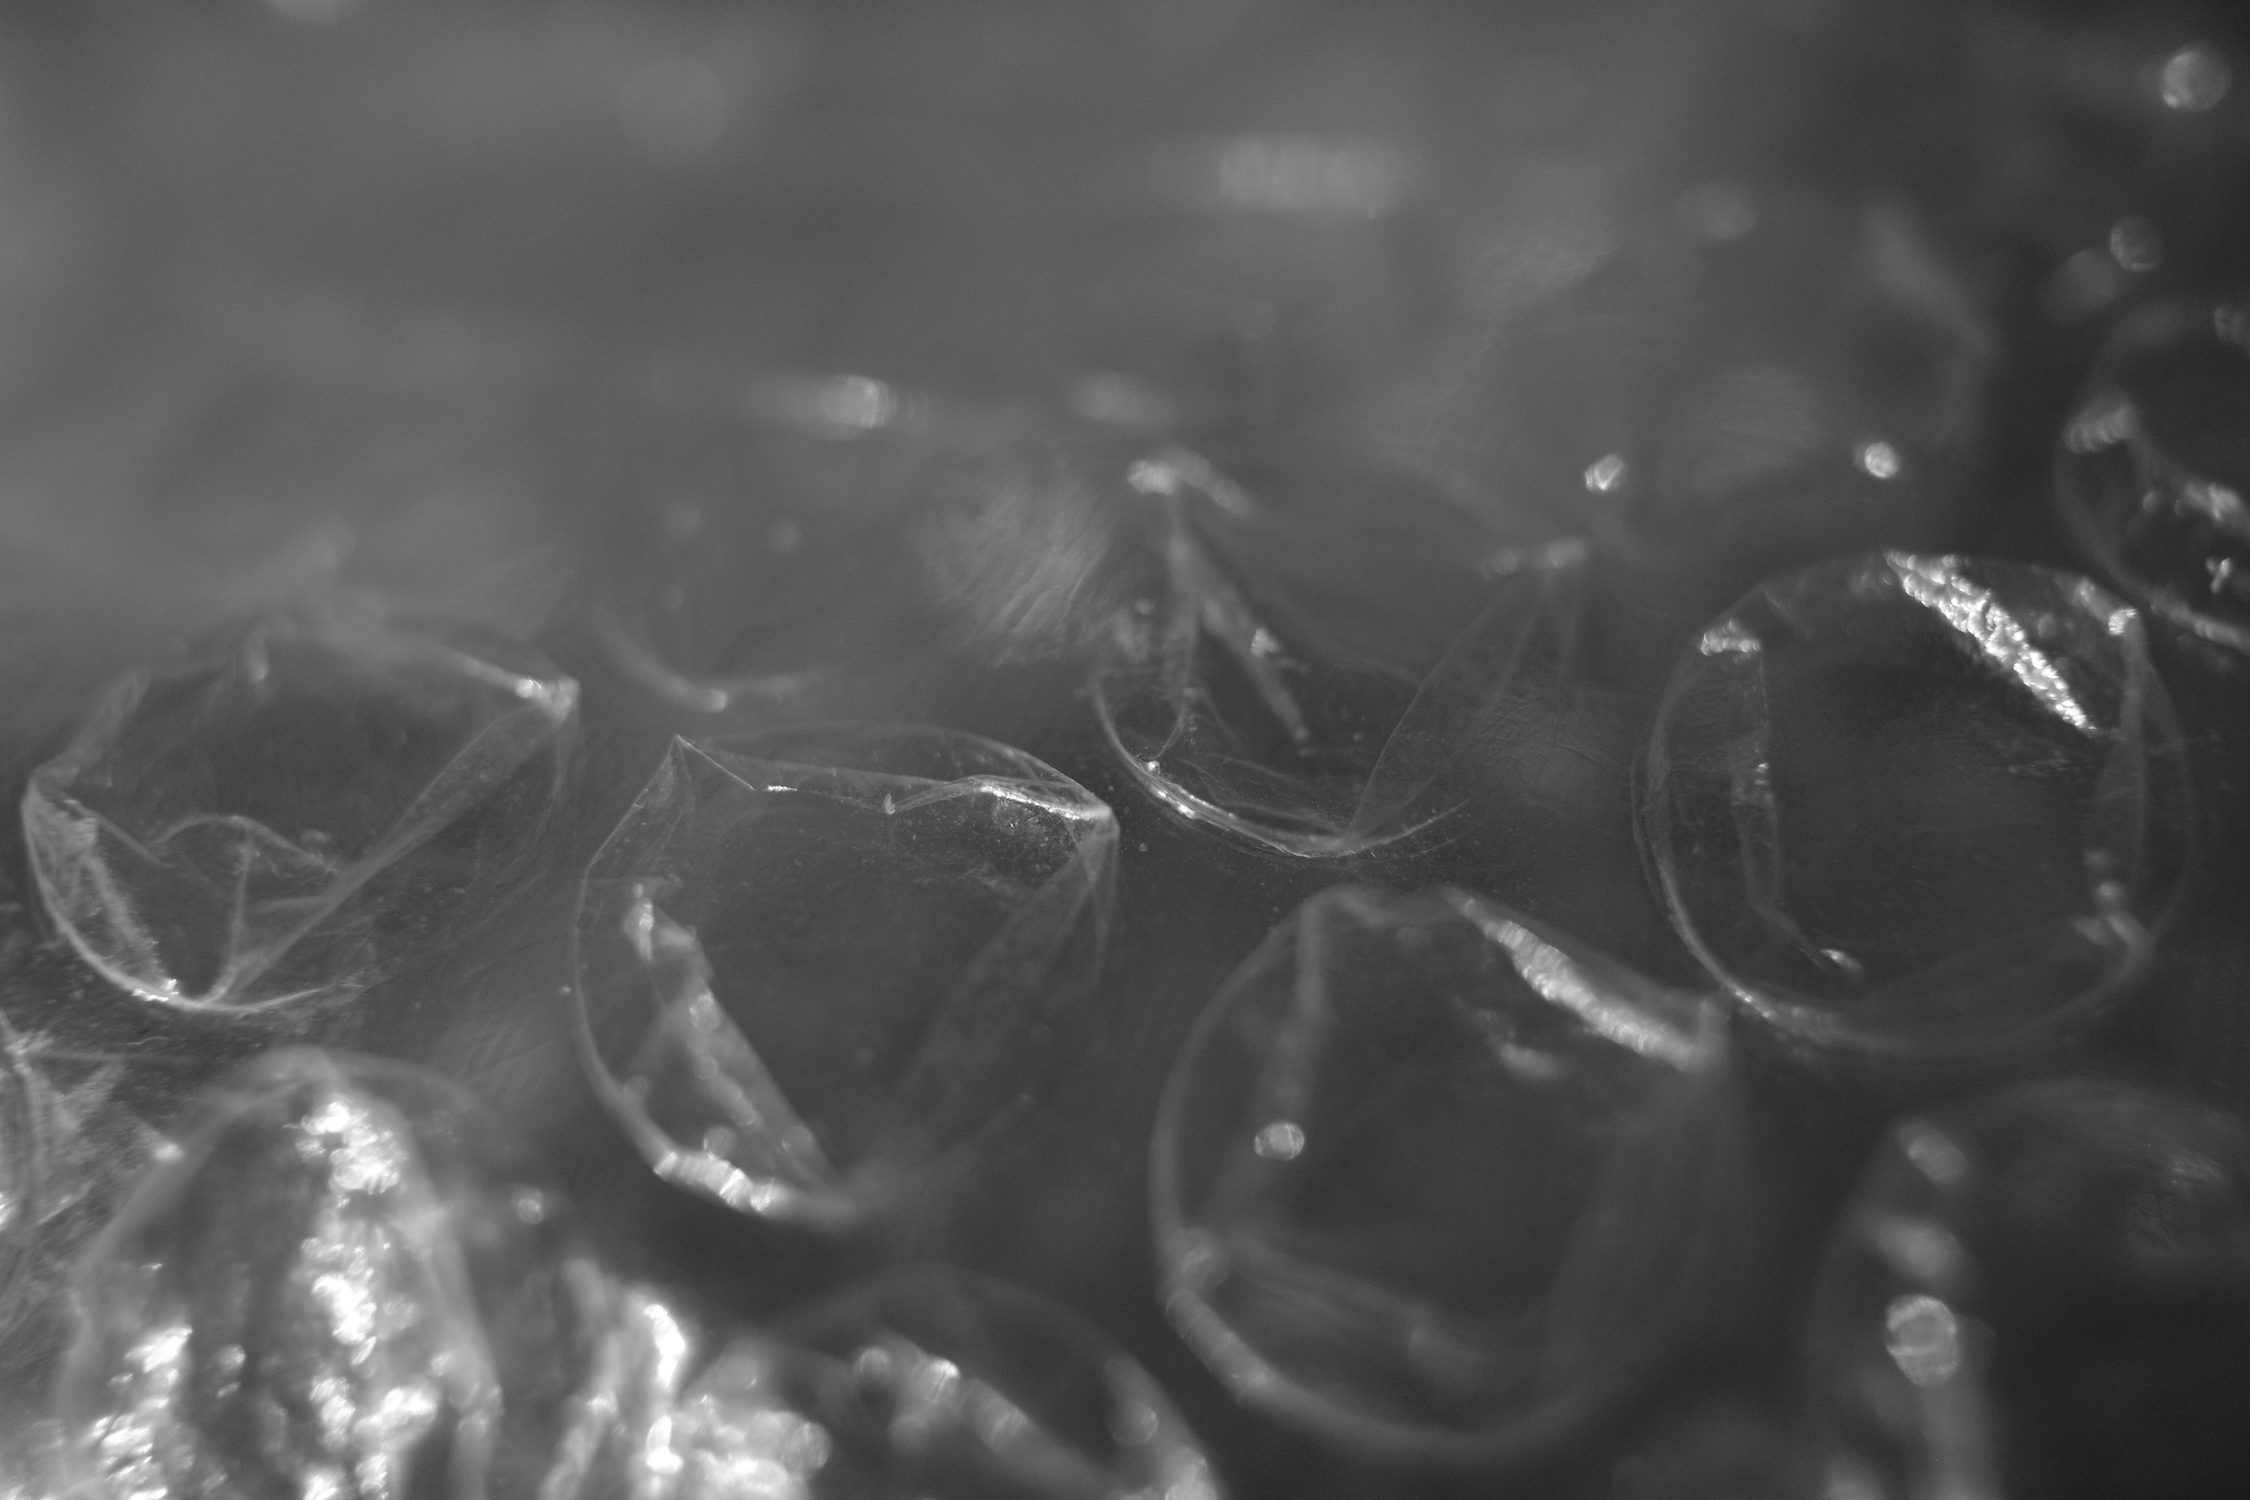 Papier bulle, vue rapprochée, photo noir et blanc.